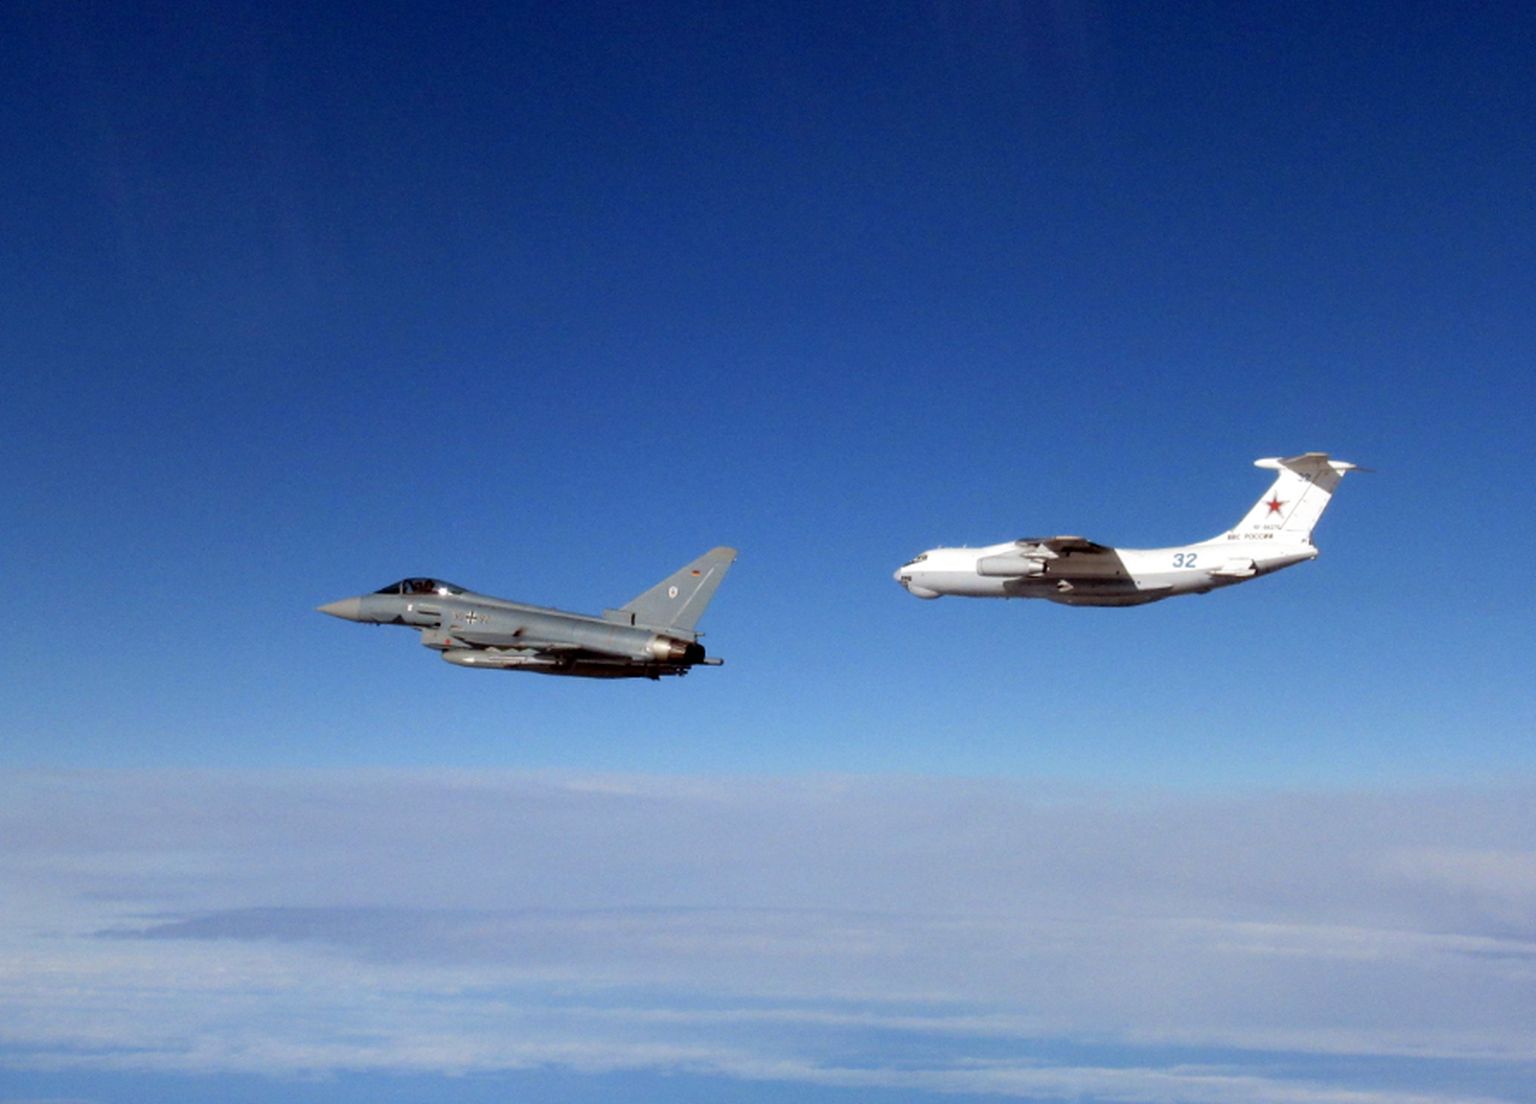 Briti ja Saksa õhujõudude hävituslennukid saadavad  Eesti õhuruumi lähedal lendavat Vene lennukit 14. märtsil 2023.